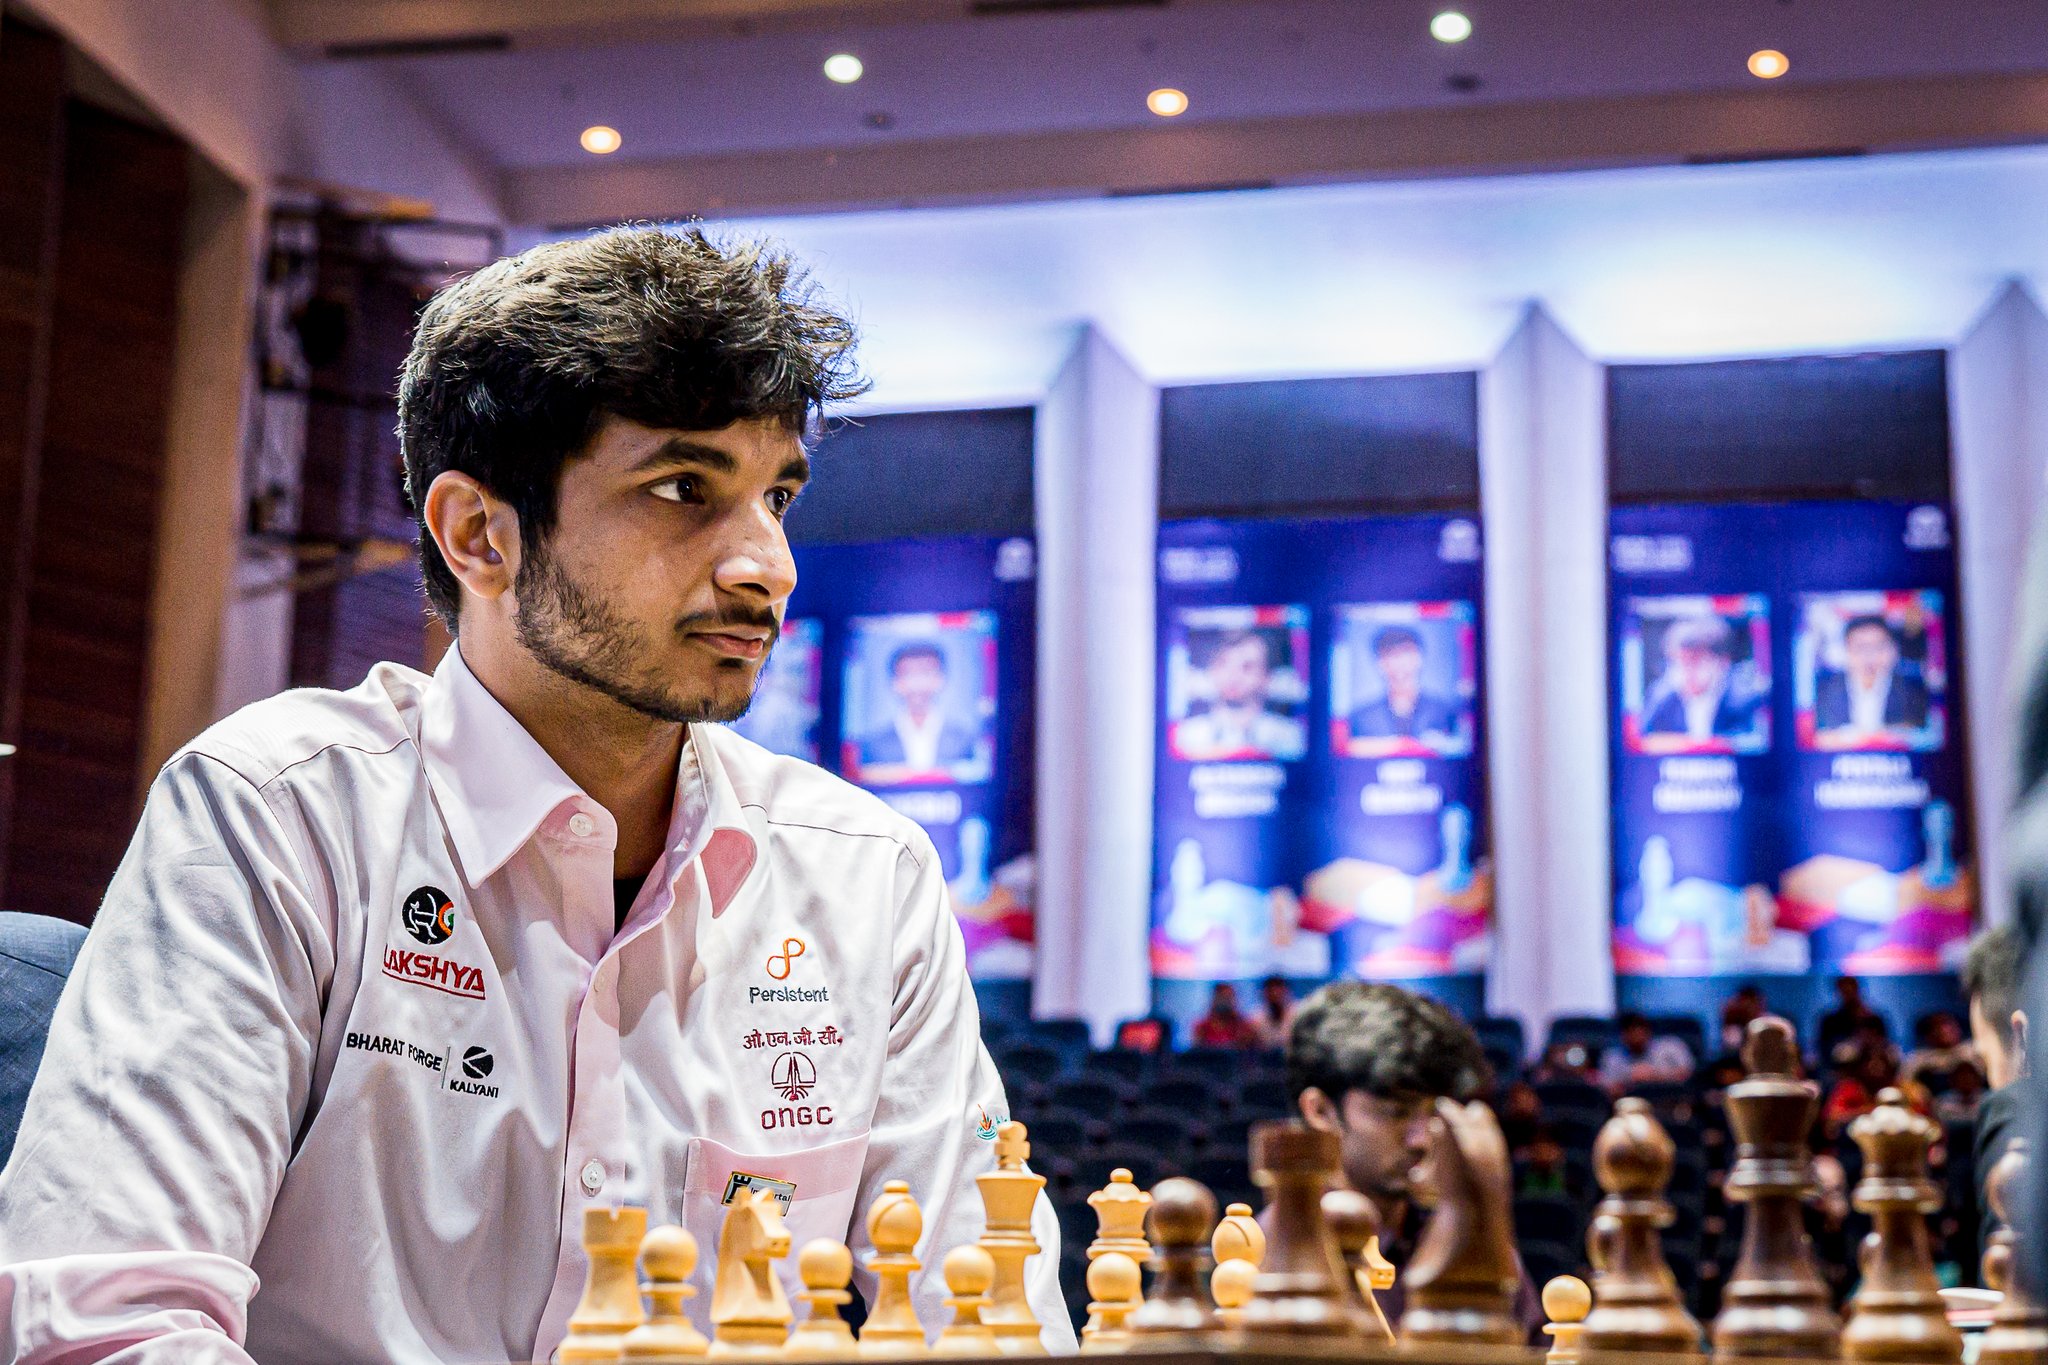 Tata Steel Chess India: Grischuk Wins Blitz Title, Abdusattorov,  Praggnanandhaa 2nd 